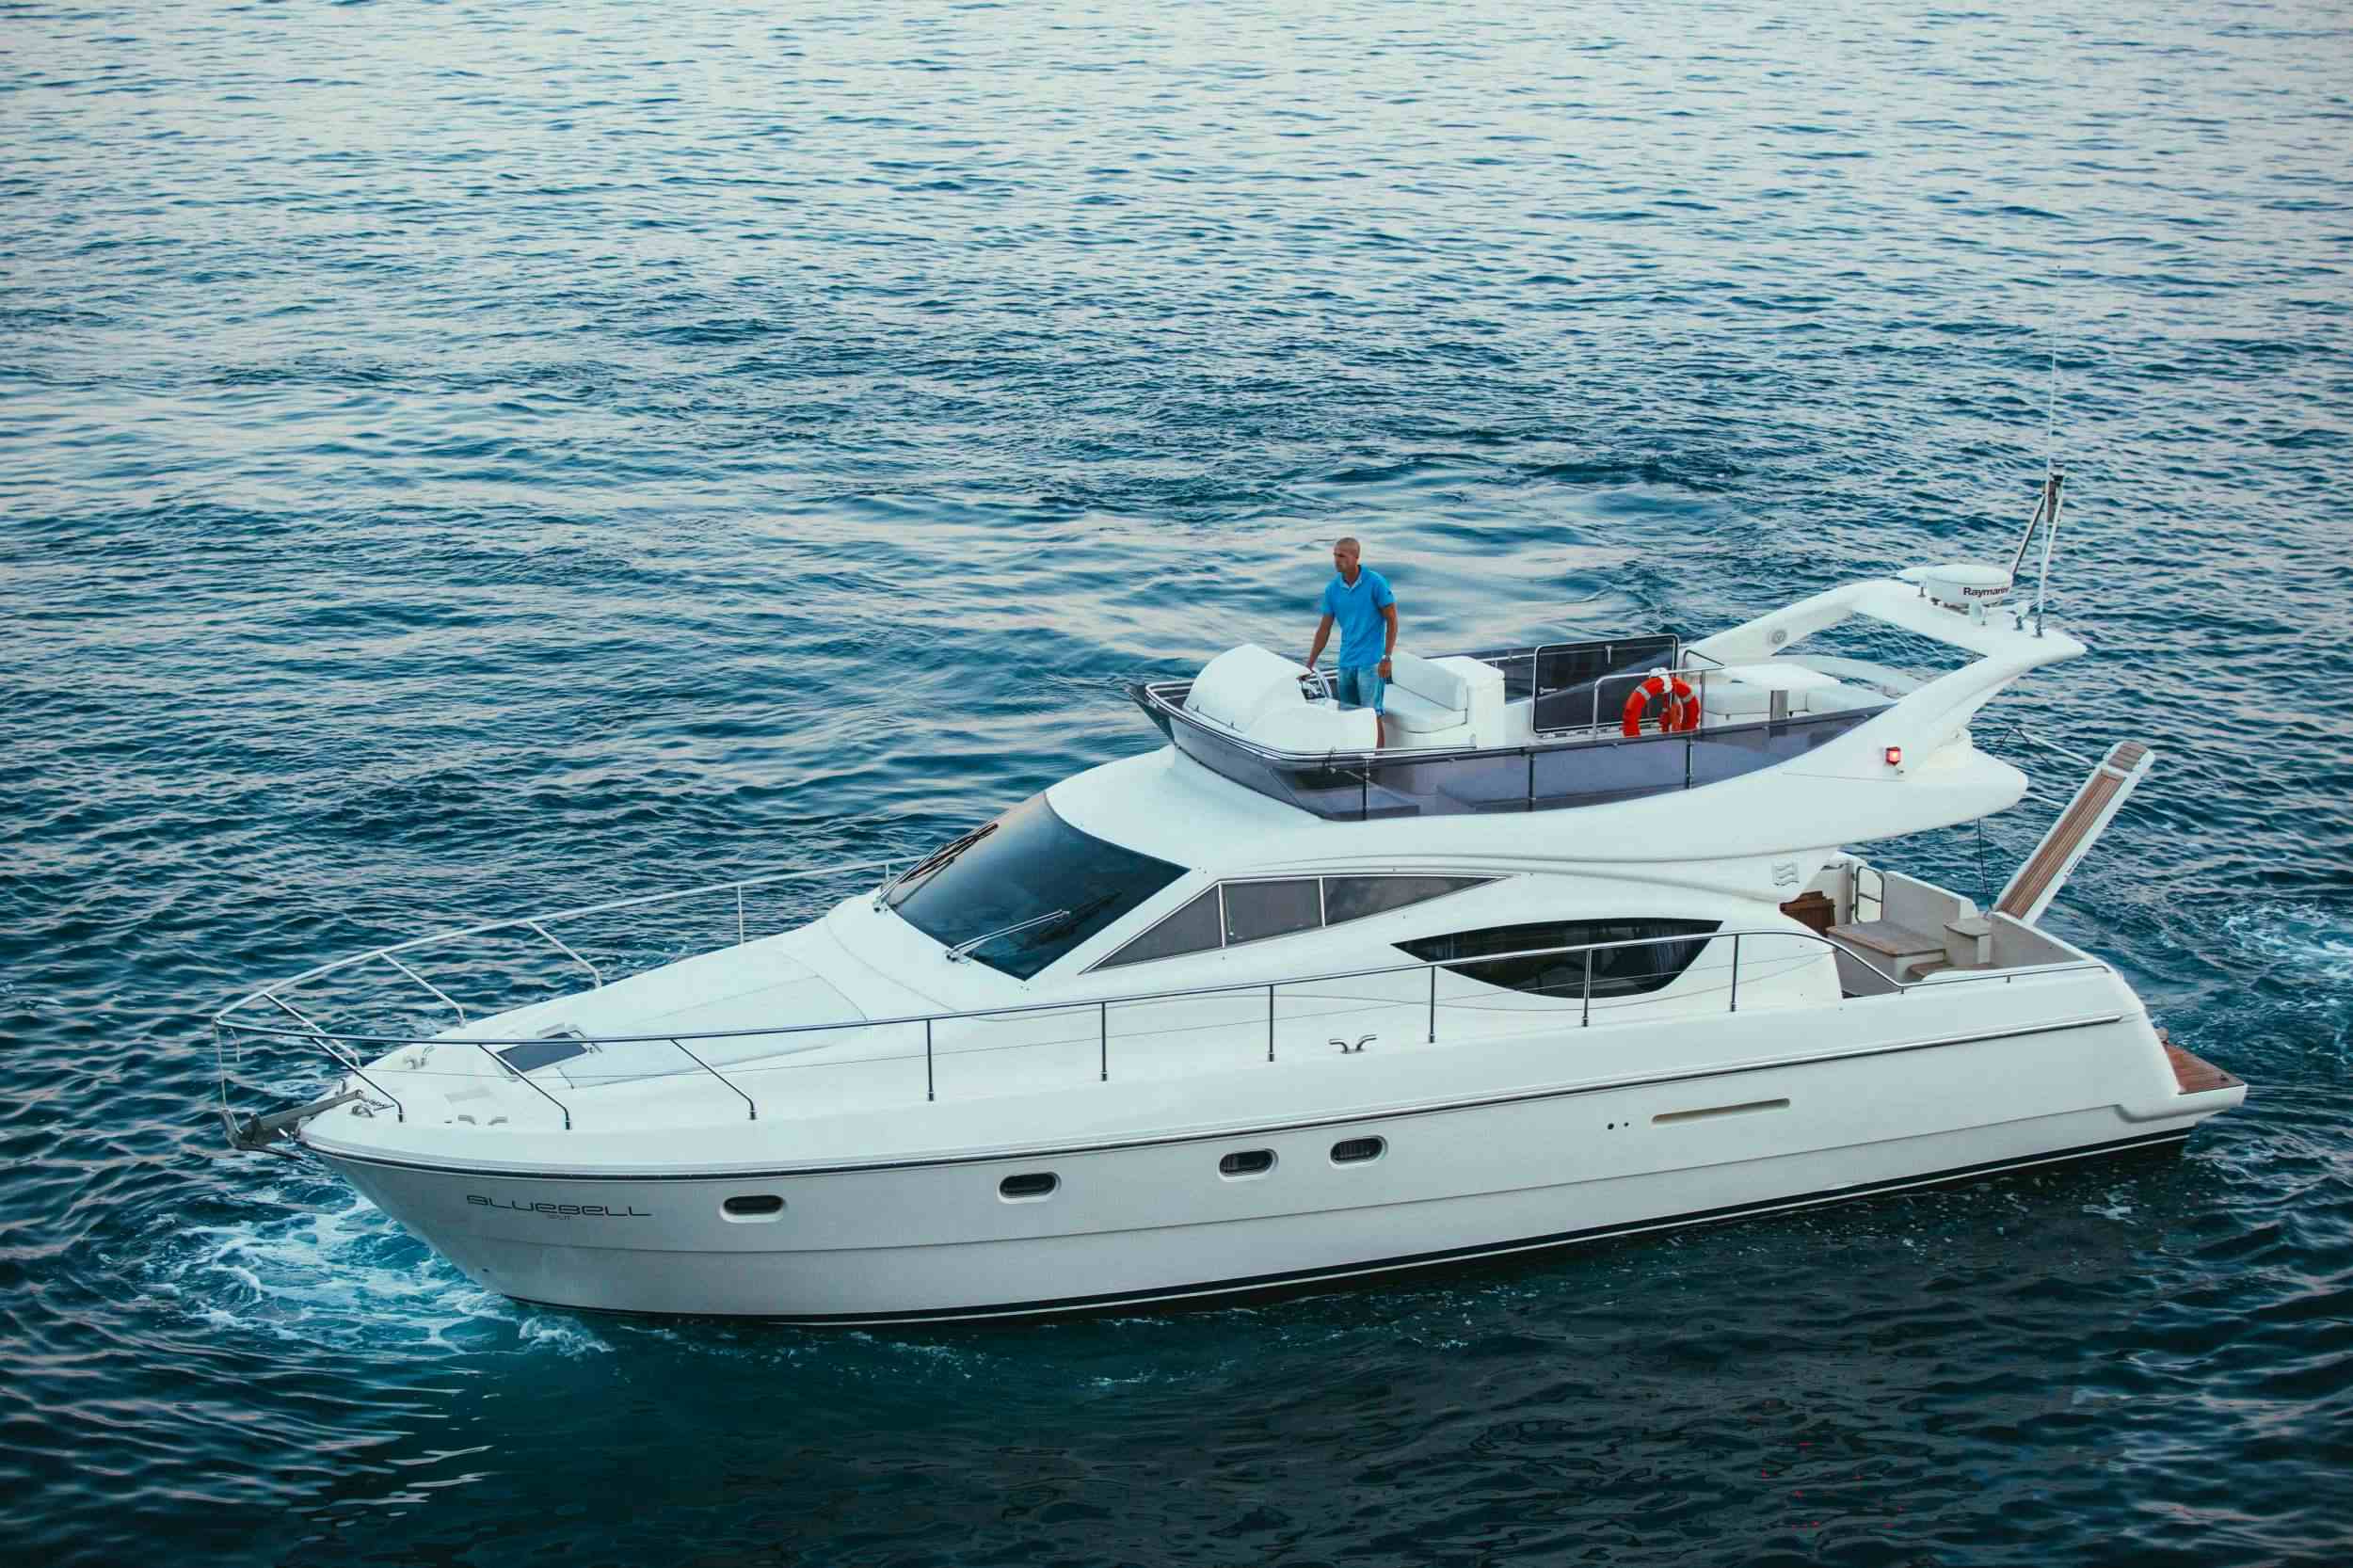 Ferretti 460 - Yacht Charter Skradin & Boat hire in Croatia 1